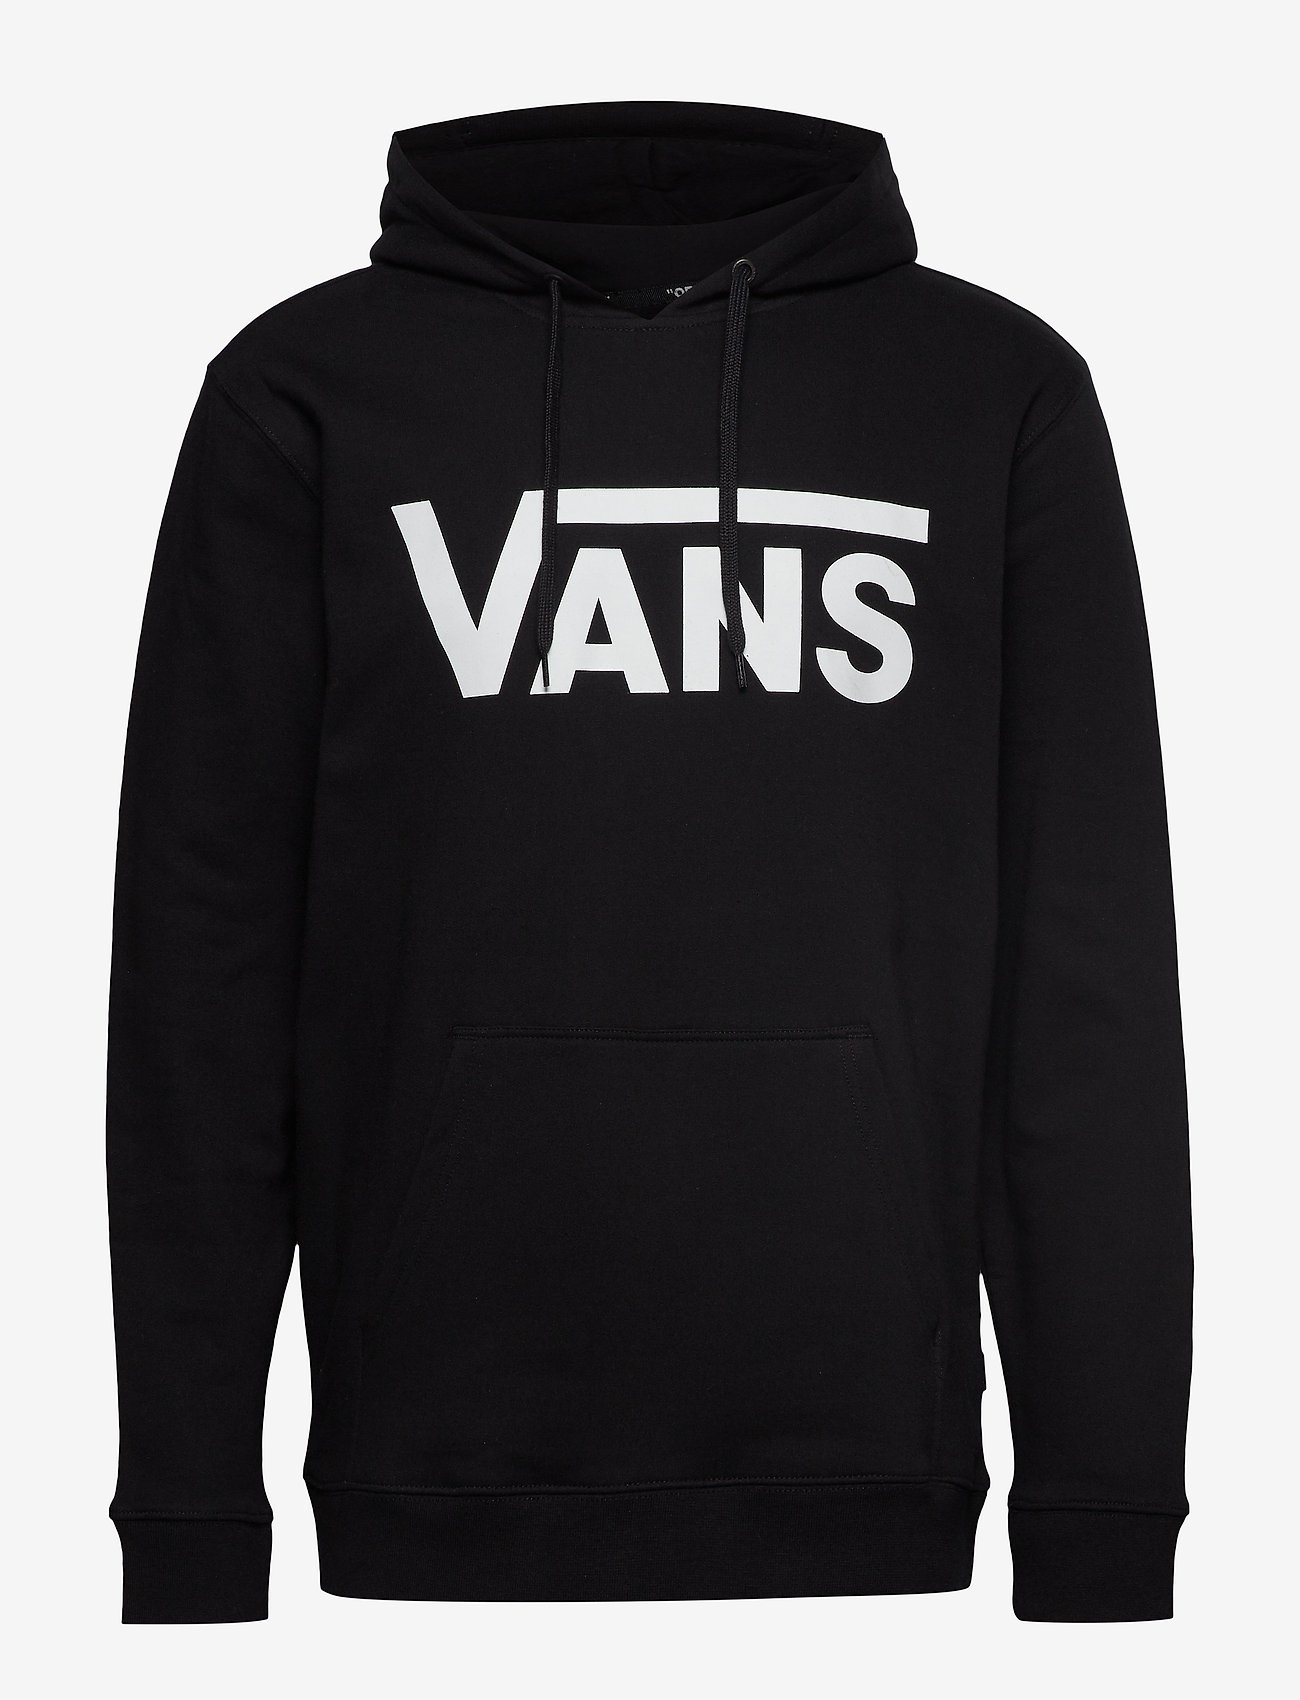 black vans sweater